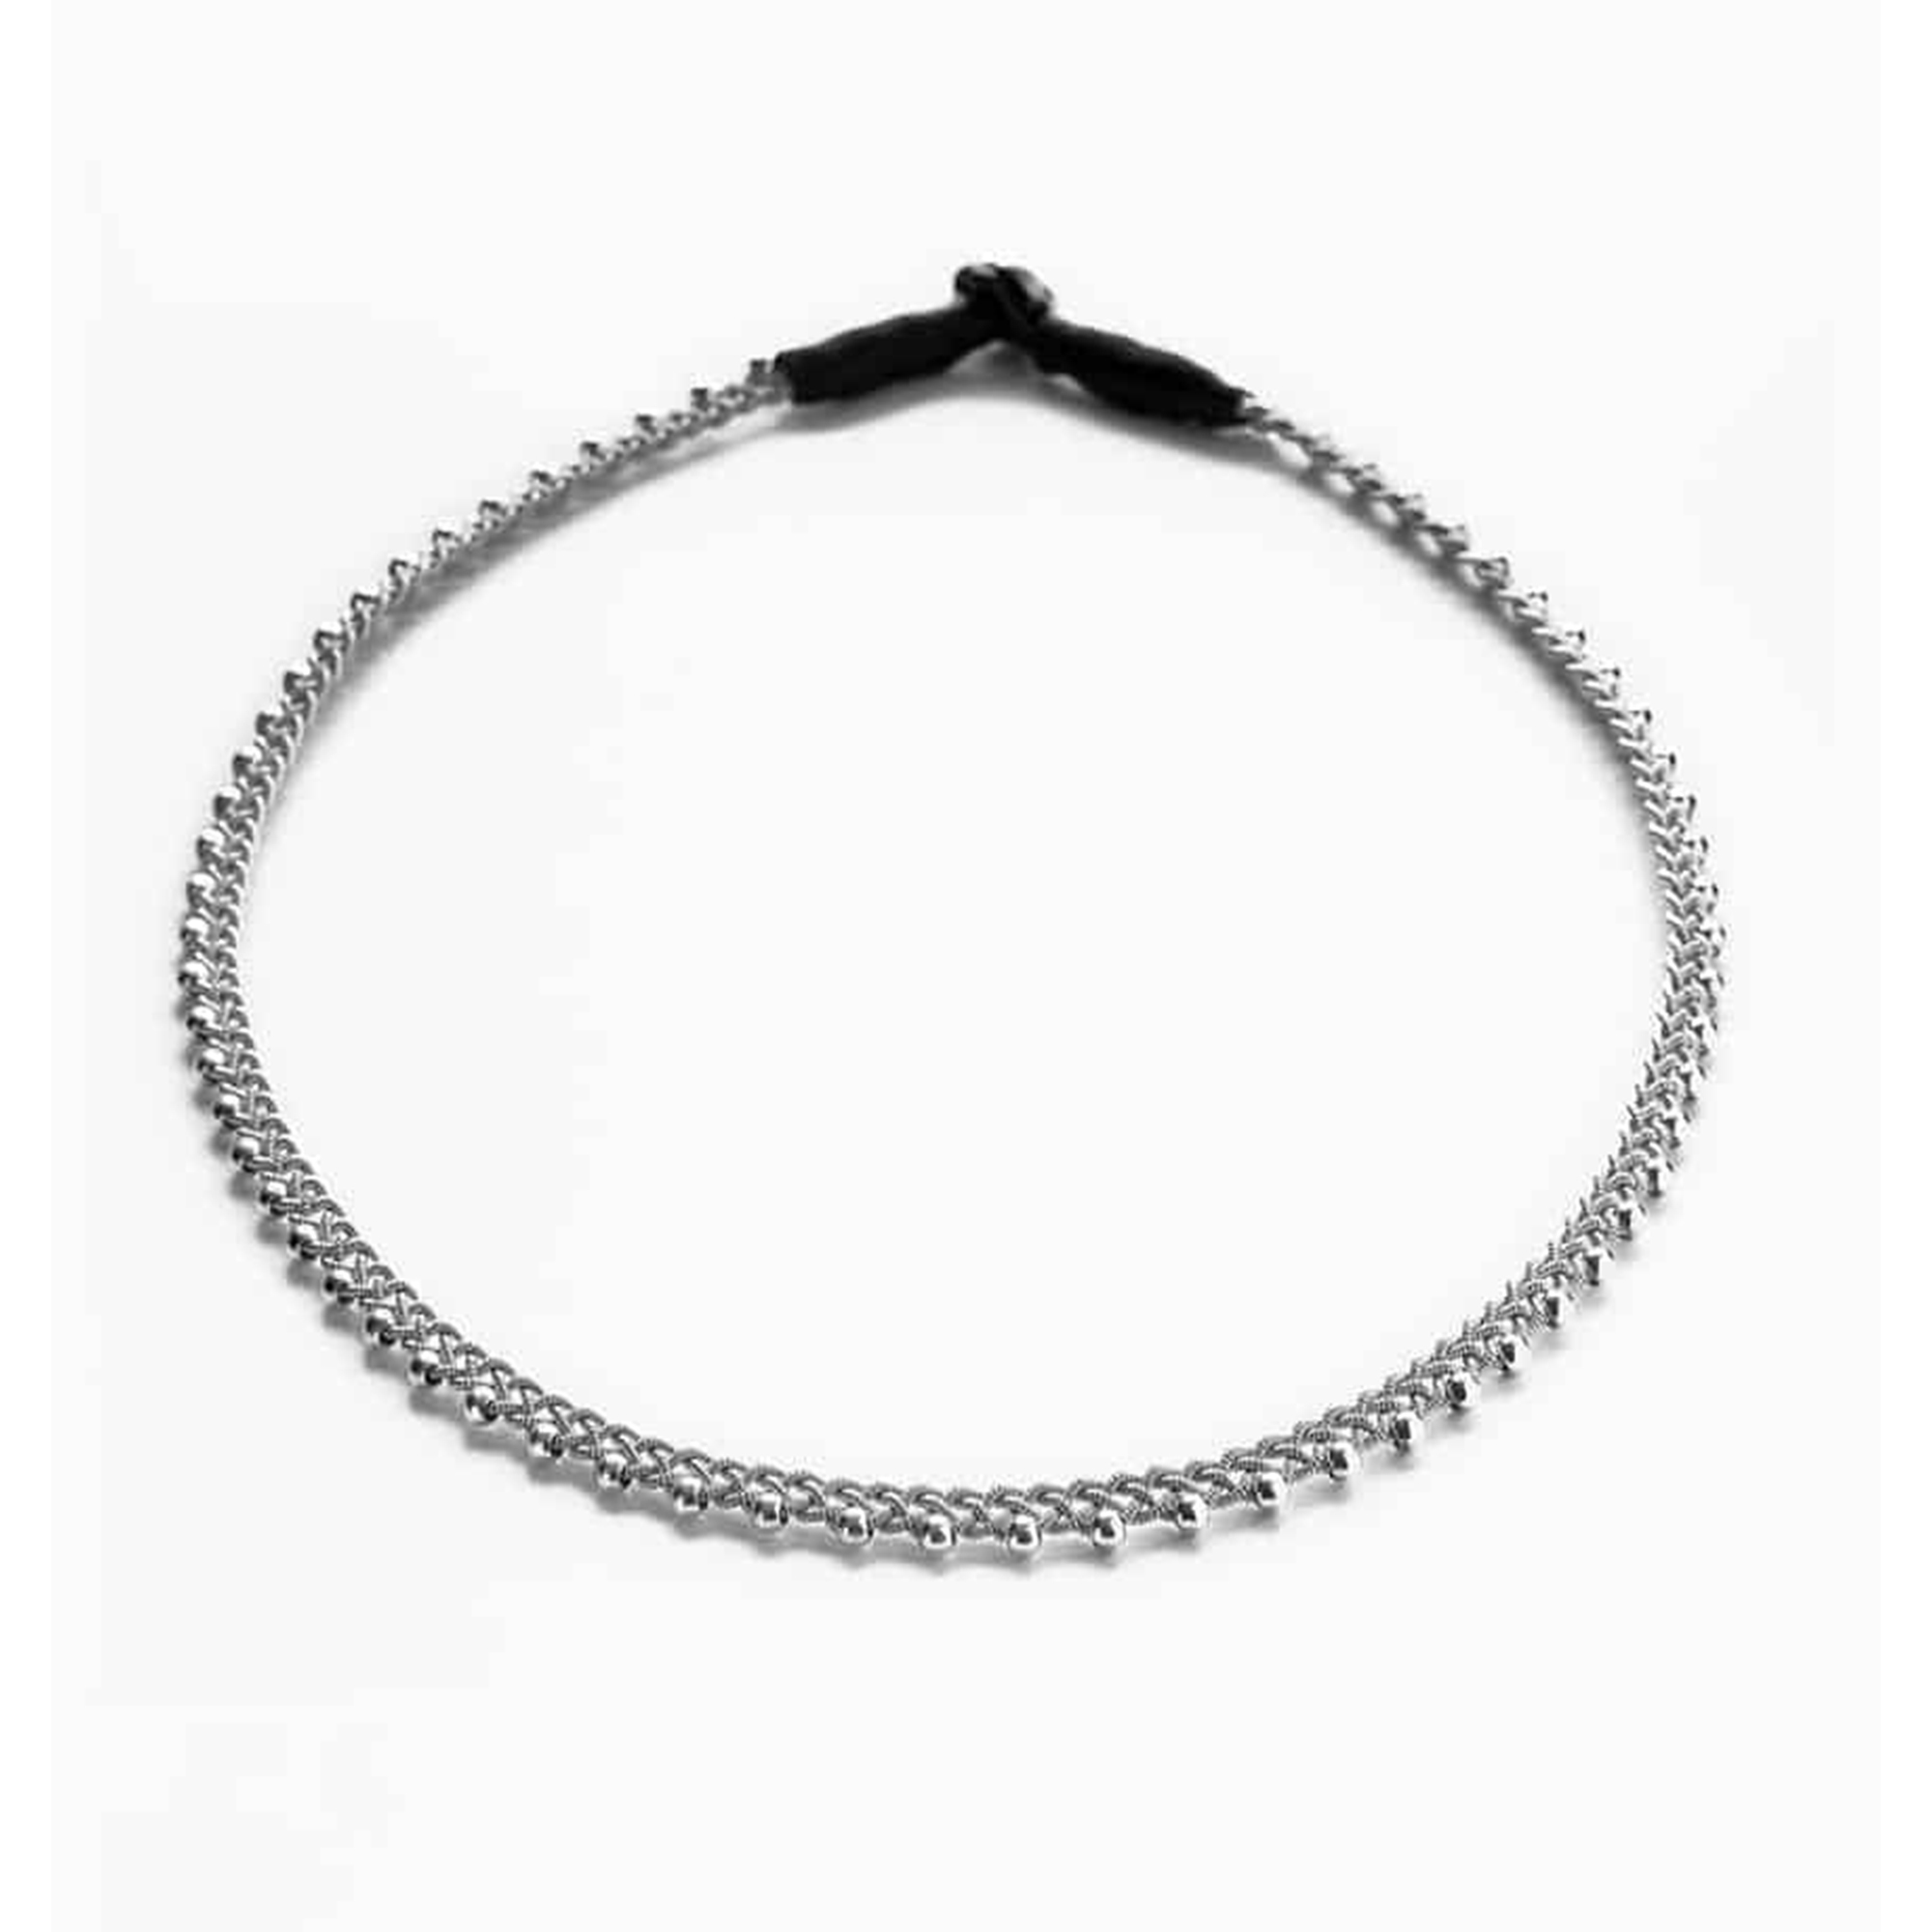 Halsband tenn/silverproduktzoombild #1